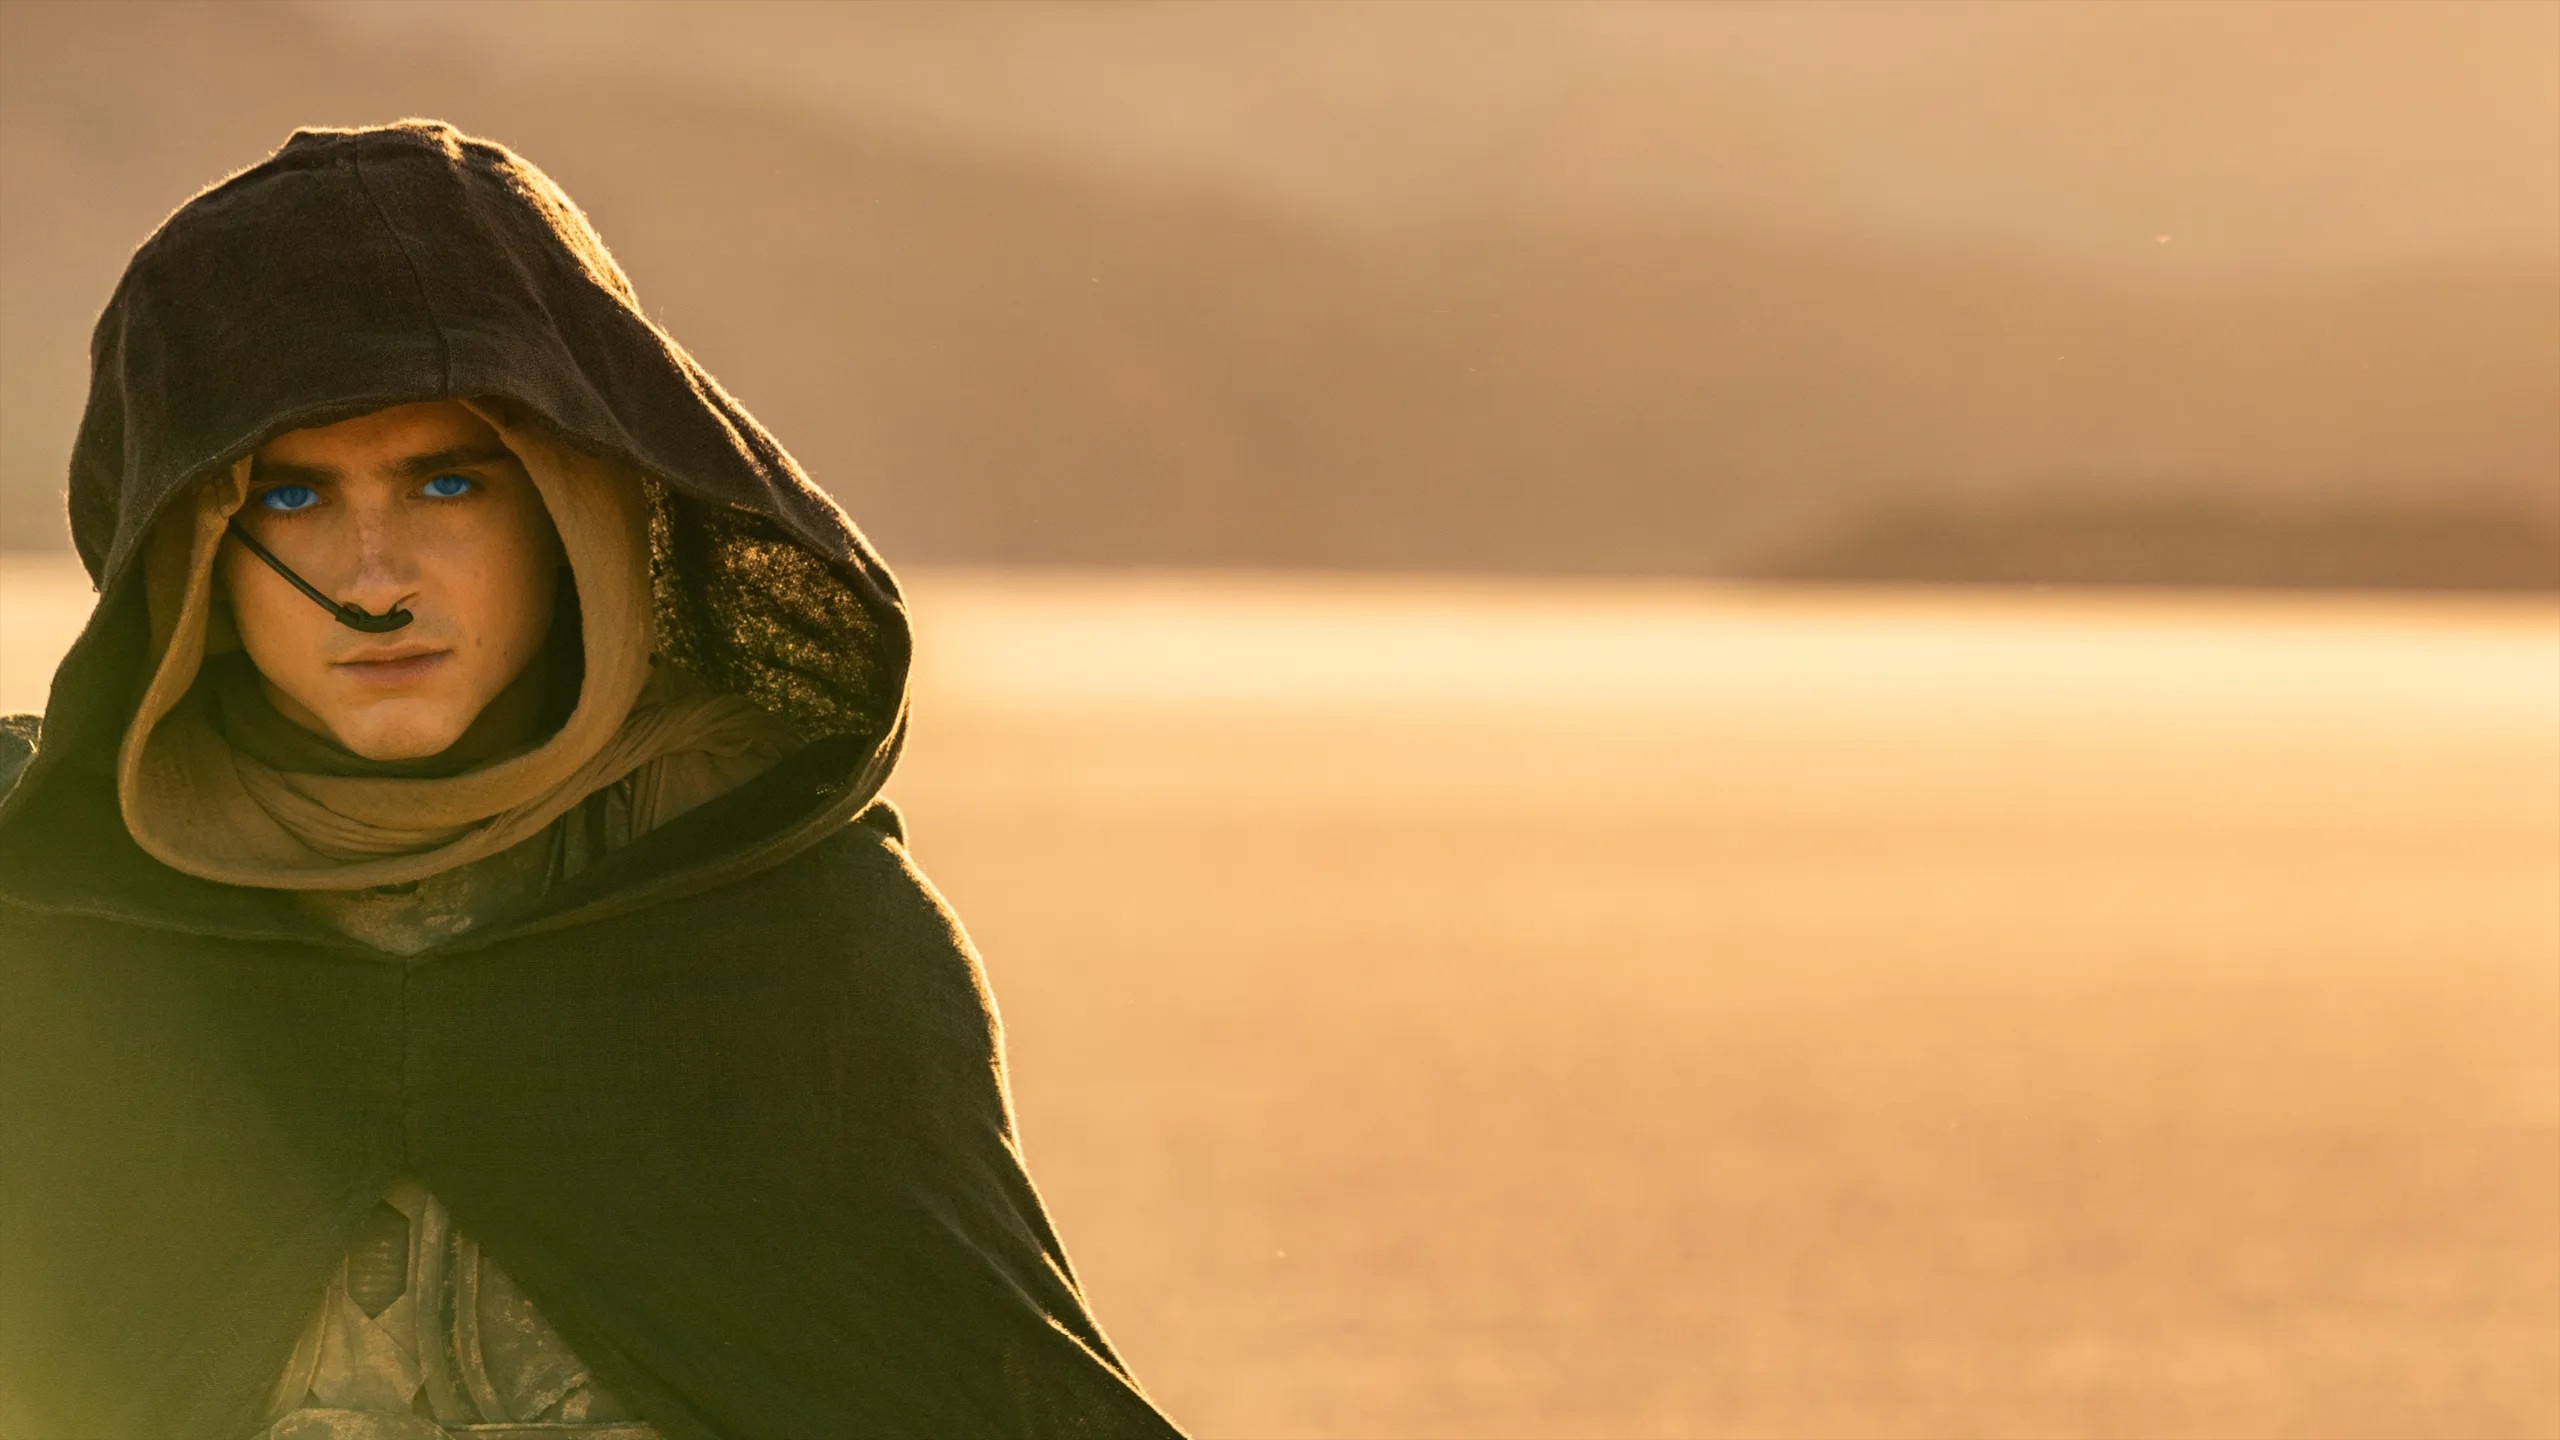 Mặc kín mít như phim ''Dune'' để chống nắng - ảnh 1